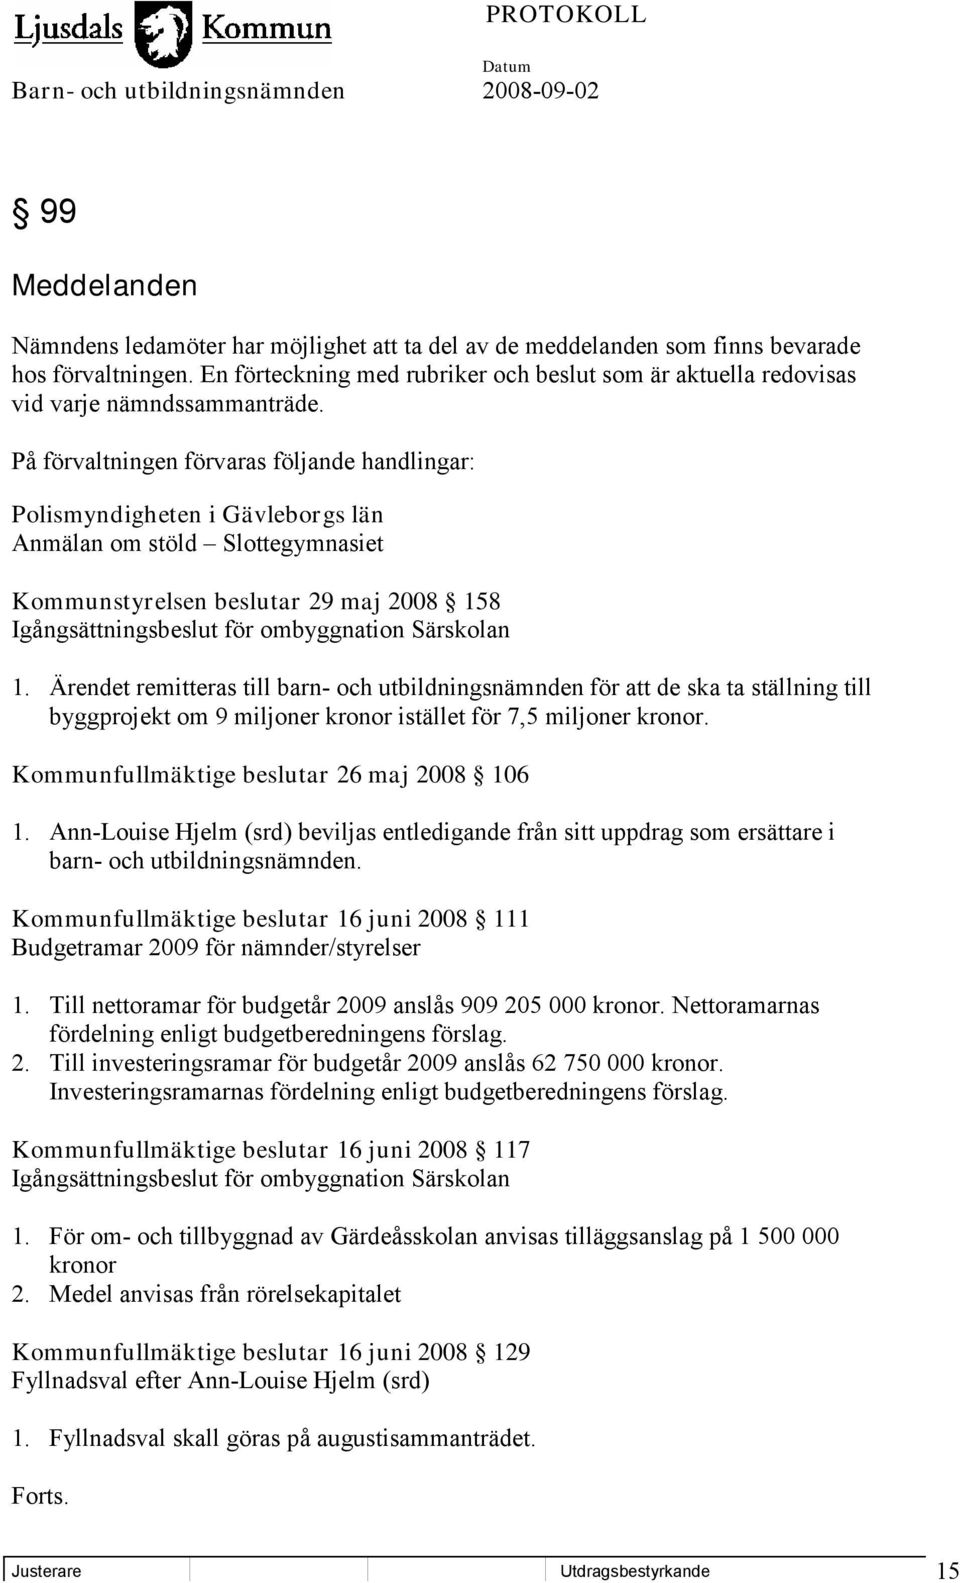 På förvaltningen förvaras följande handlingar: Polismyndigheten i Gävleborgs län Anmälan om stöld Slottegymnasiet Kommunstyrelsen beslutar 29 maj 2008 158 Igångsättningsbeslut för ombyggnation